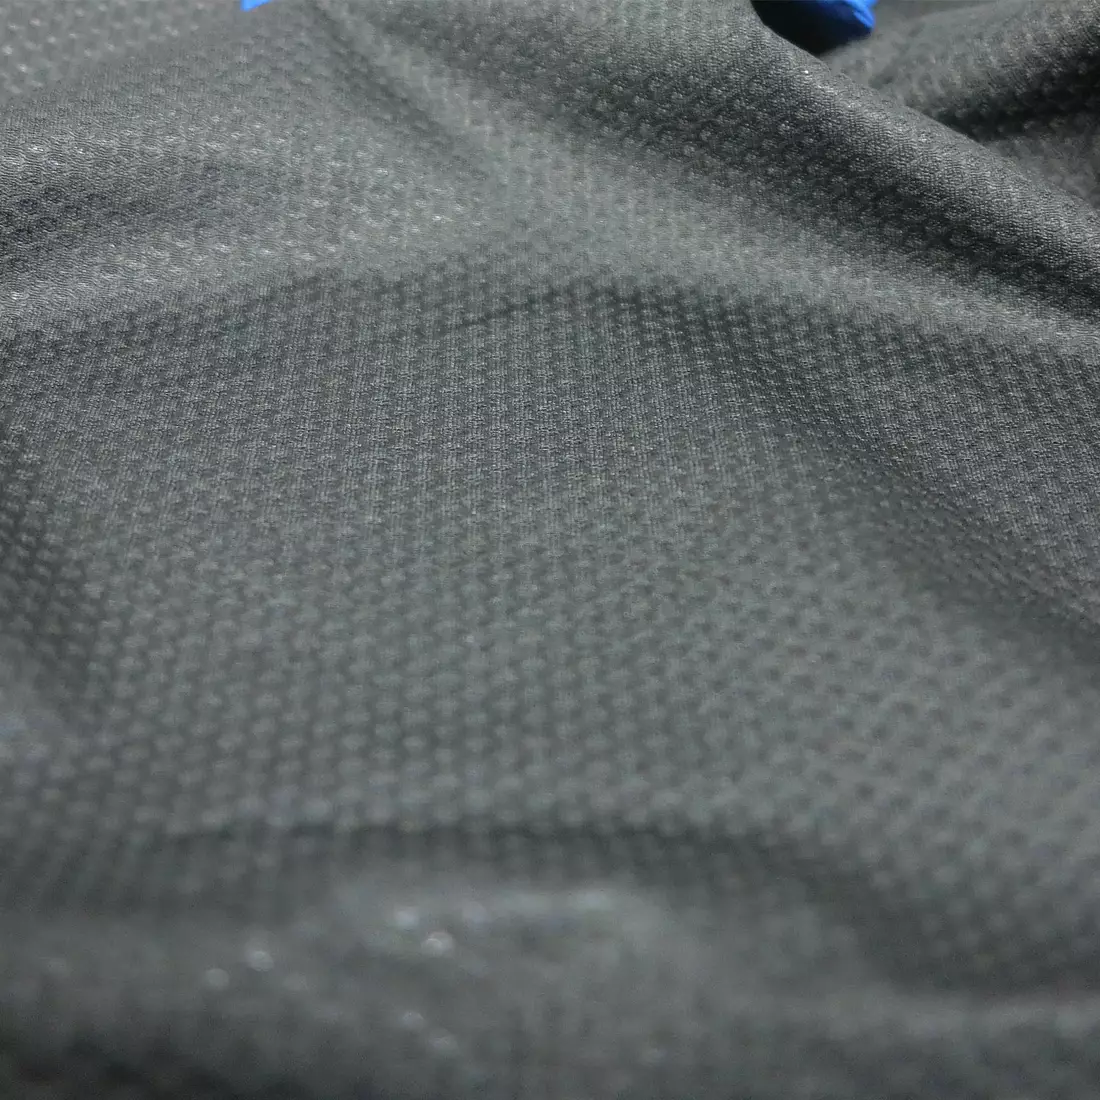 Softshell VESPER šedo-modrá sportovní bunda